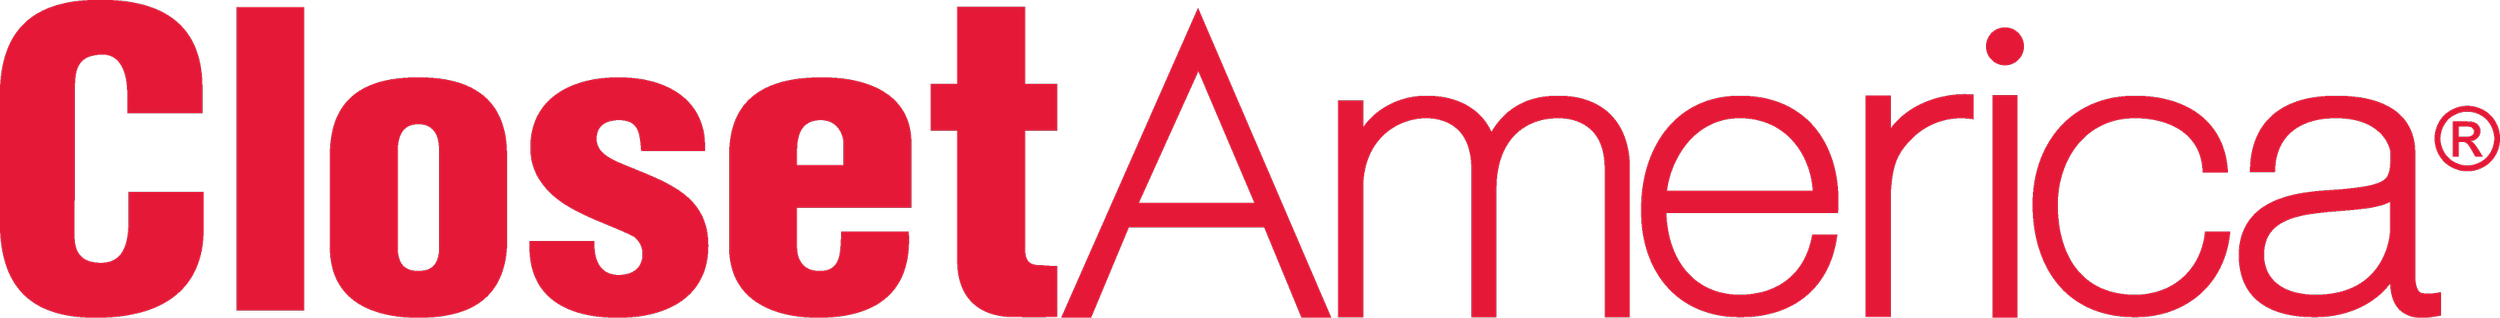 Sponsor - Closet America Logo.png